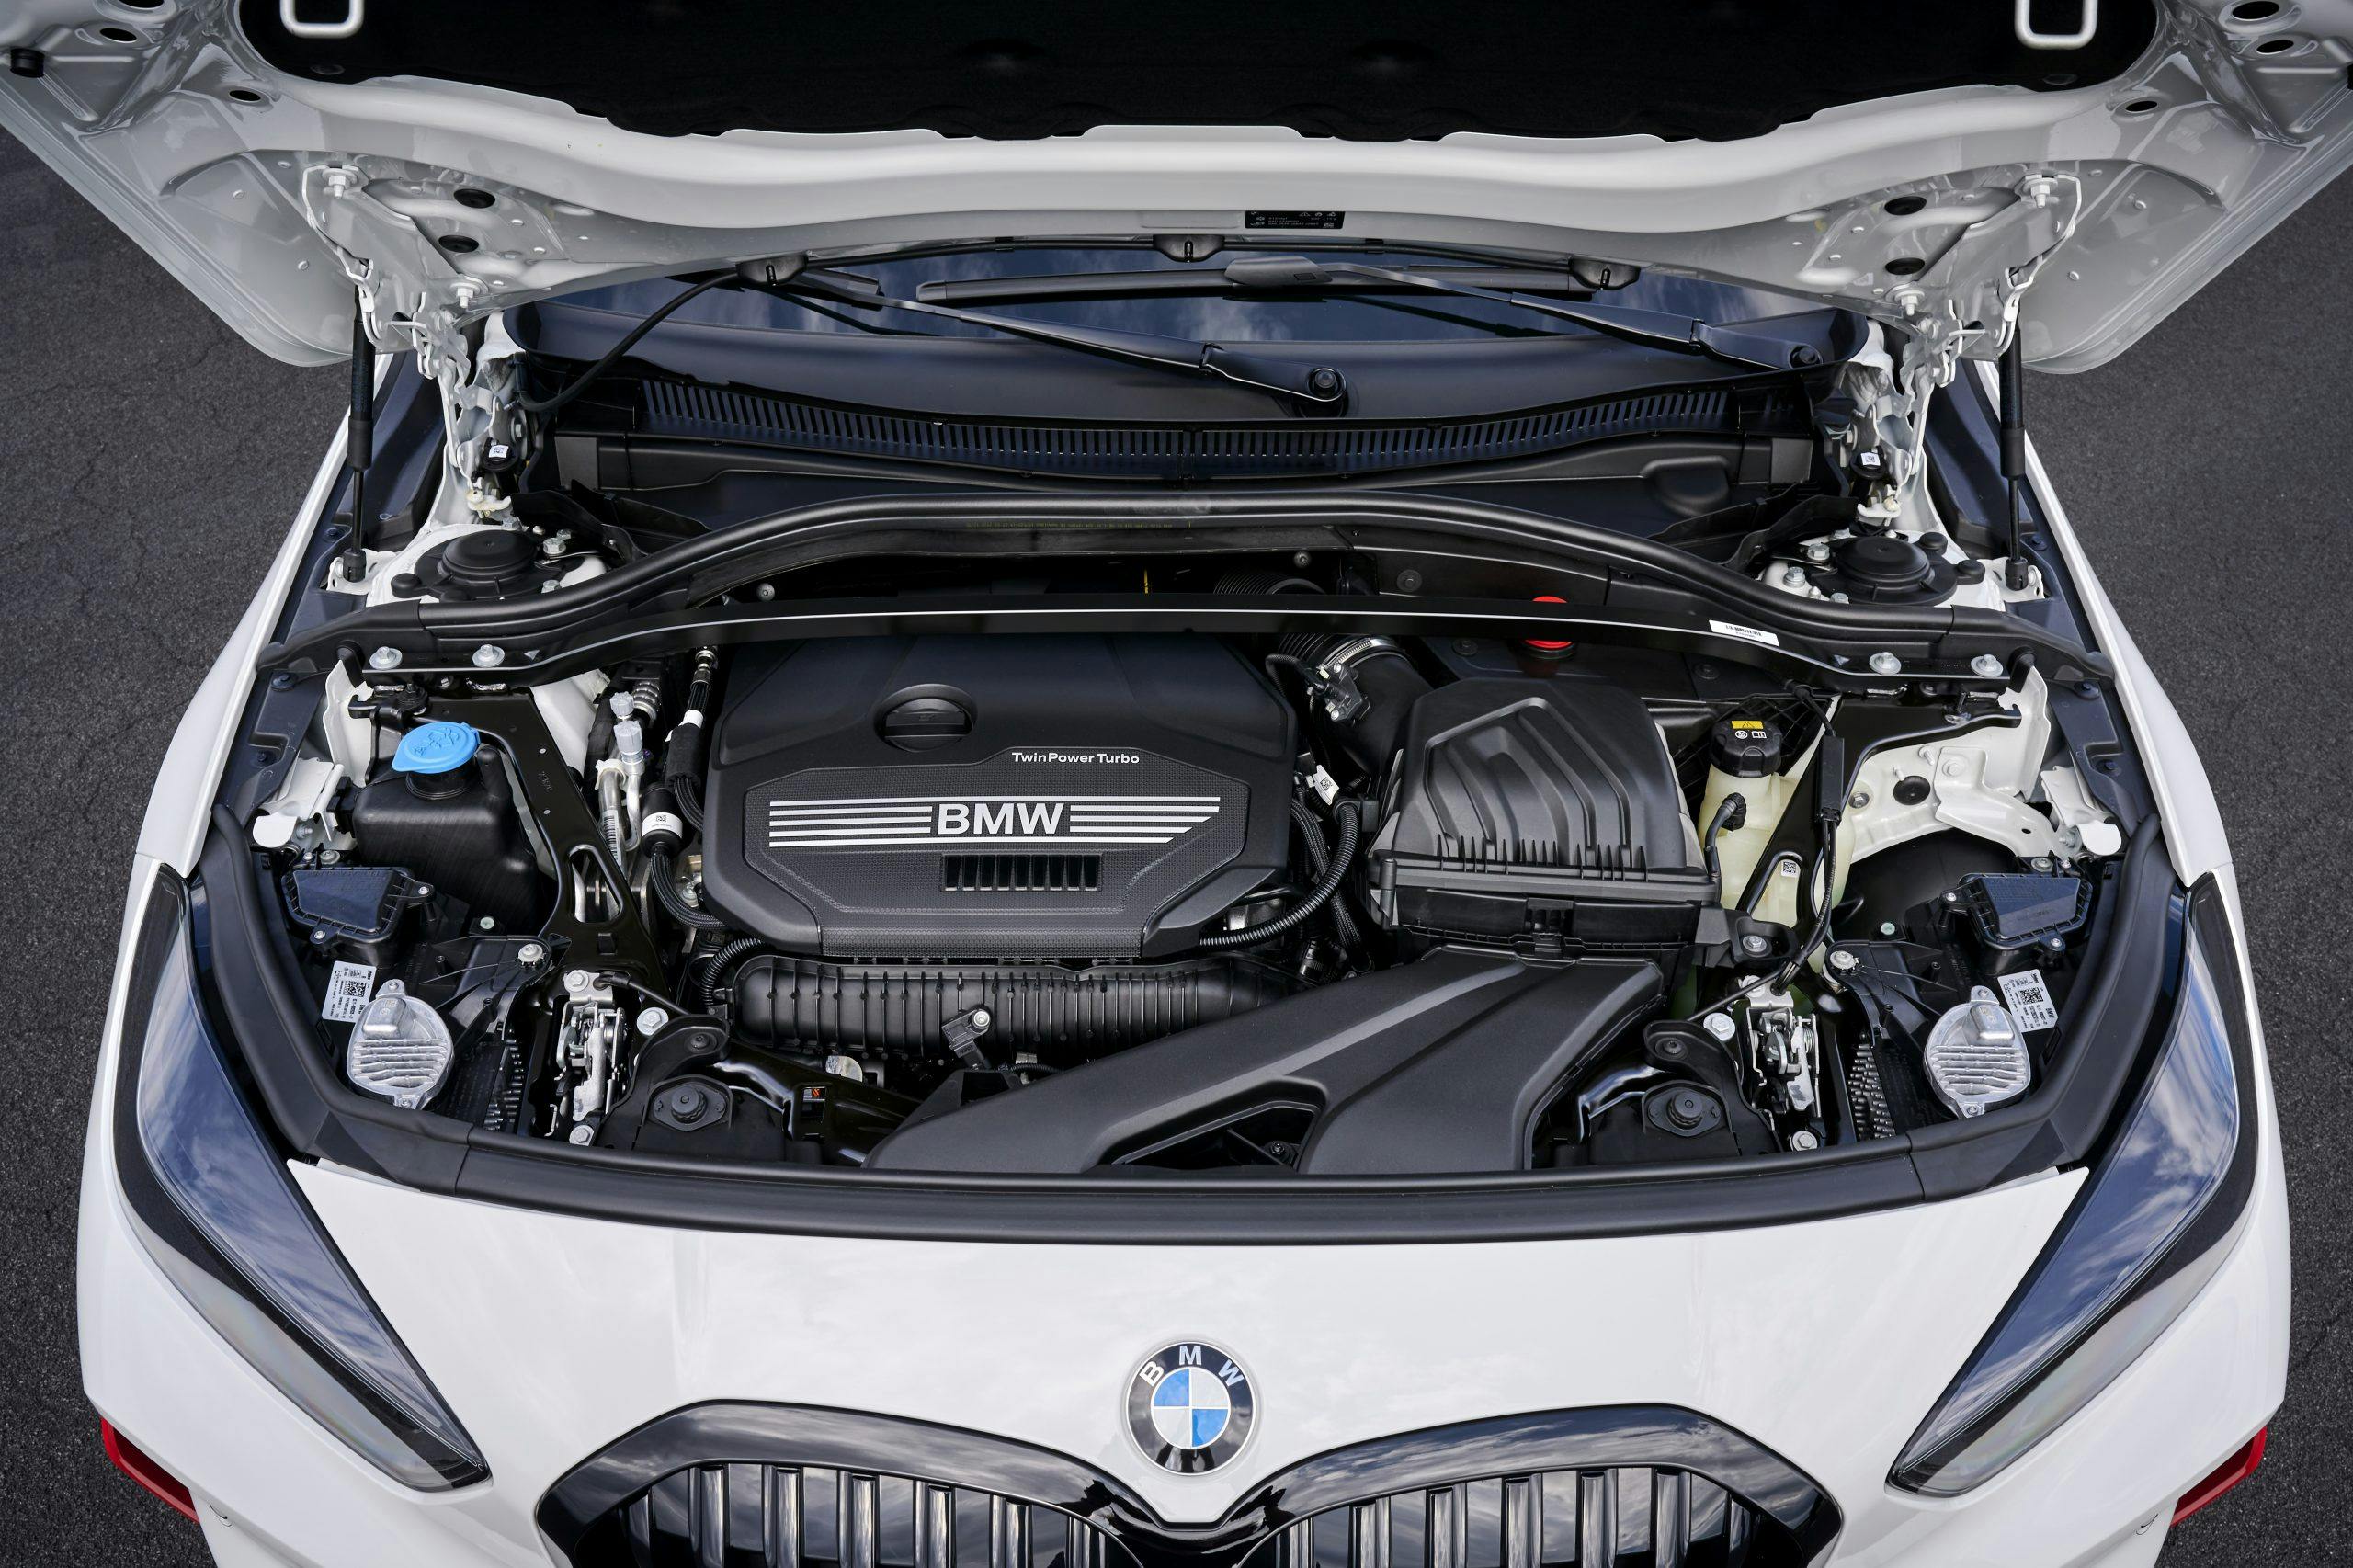 BMW 128 ti engine